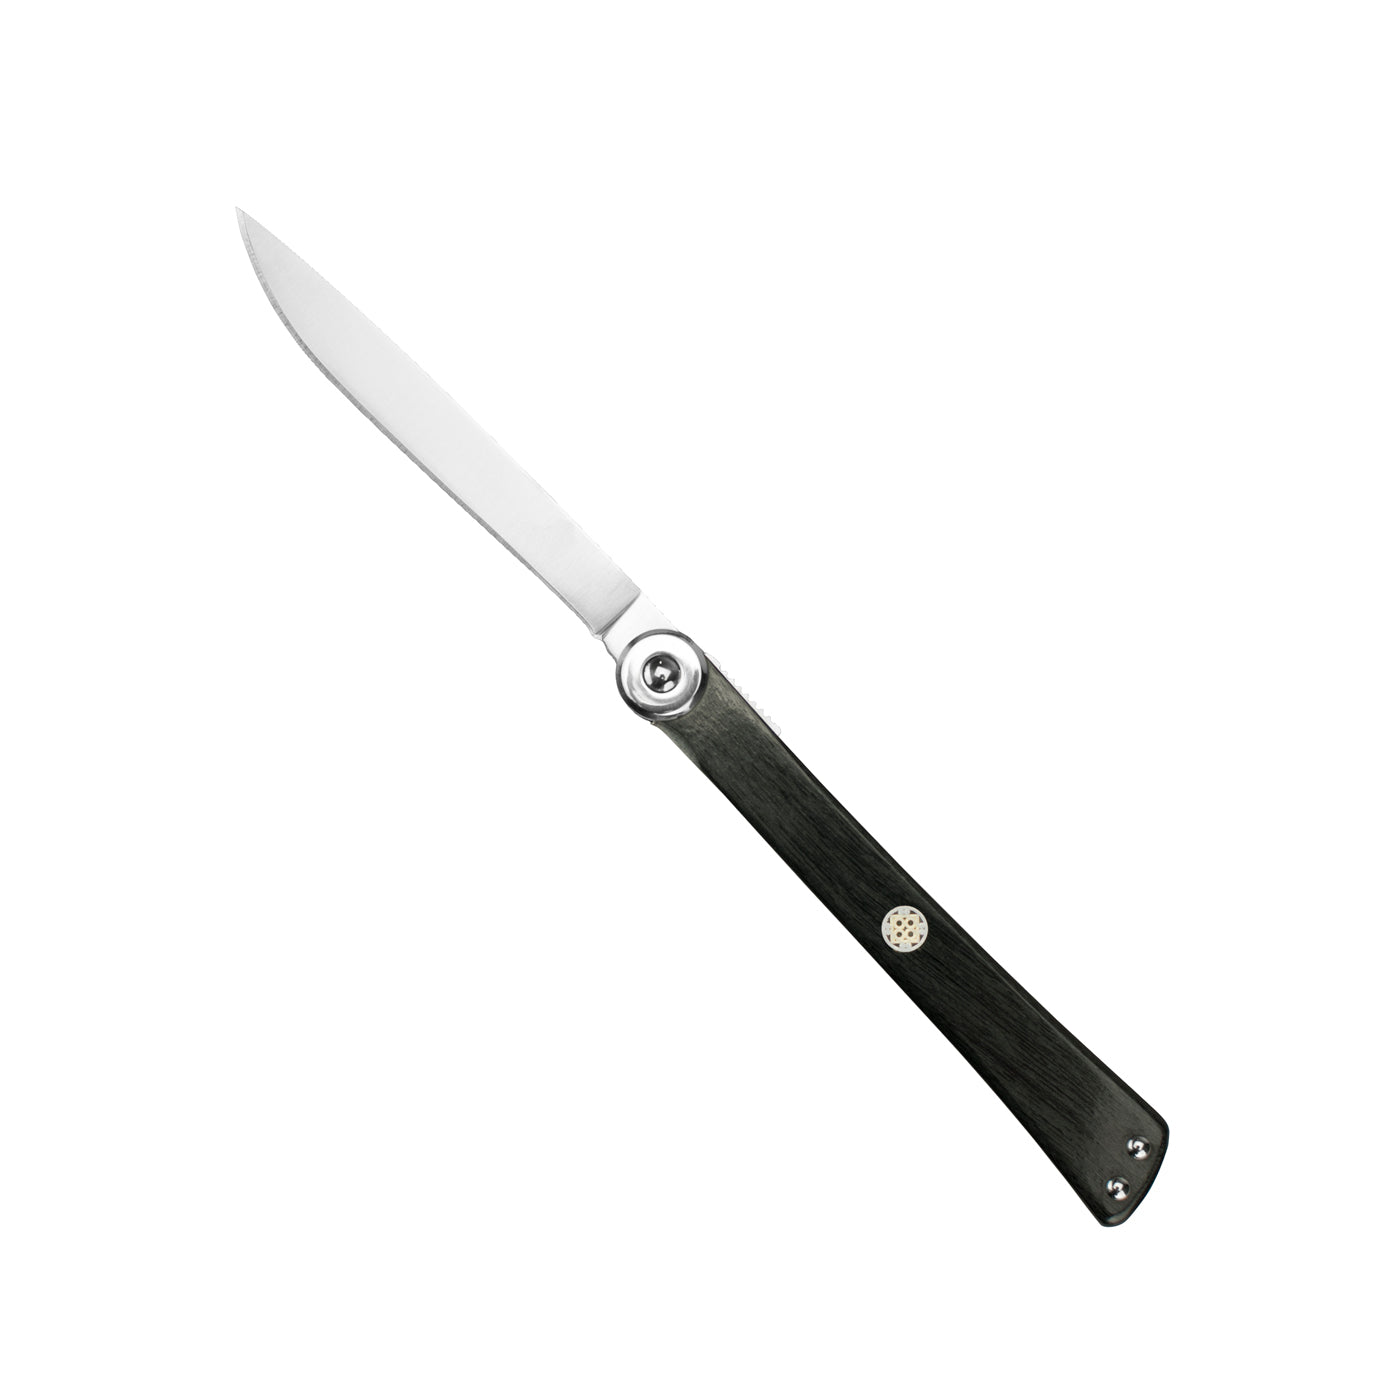 Shun Higo Nokami Personal Steak Knife, 6 inch